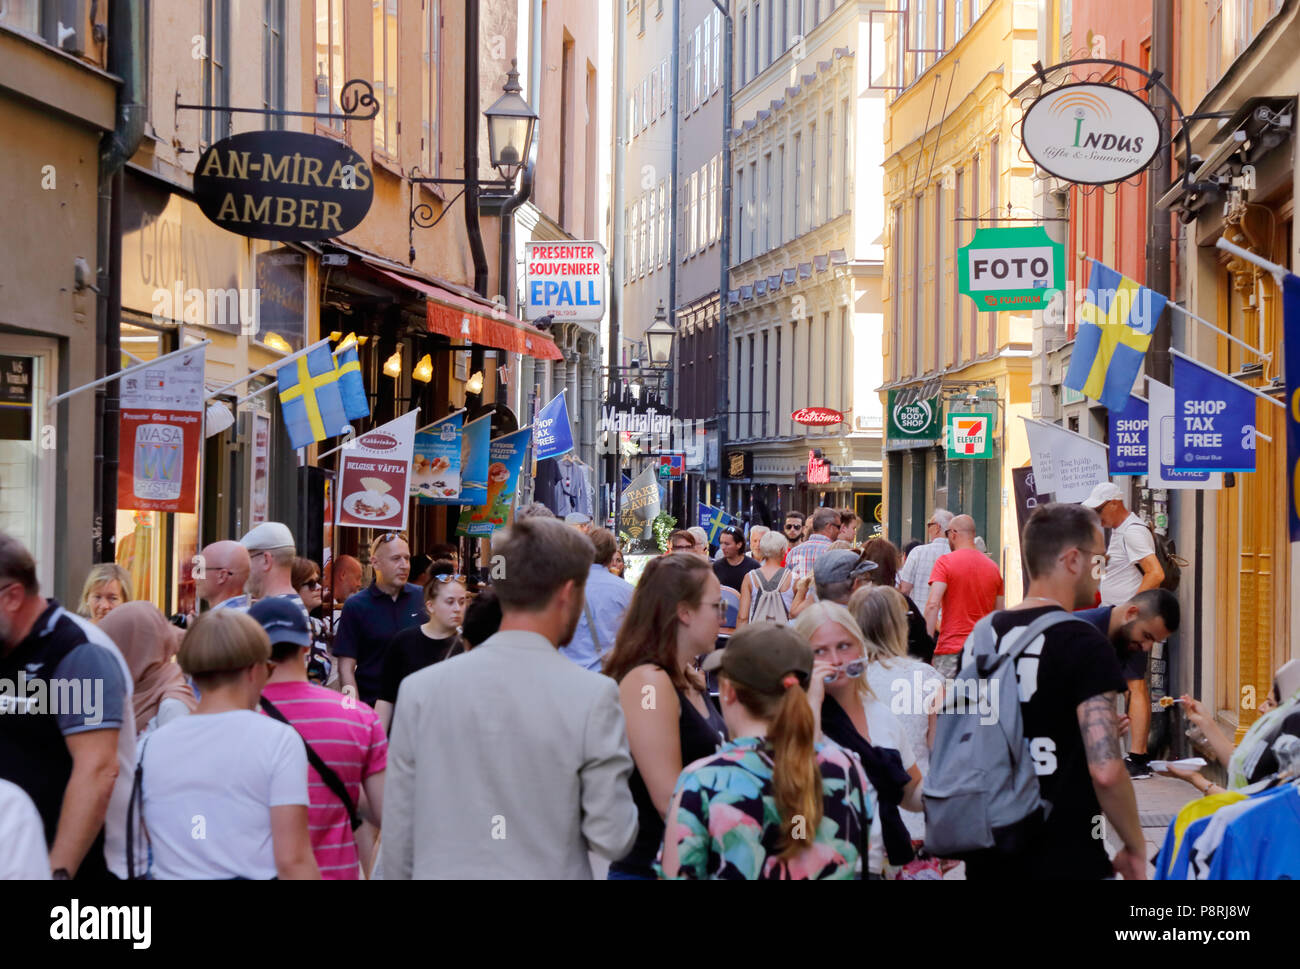 Stoccolma, Svezia - 12 Luglio 2018: Il Vasterlanggatan Street nella città vecchia era affollato, che è un luogo popolare per i turisti in visita a. Foto Stock